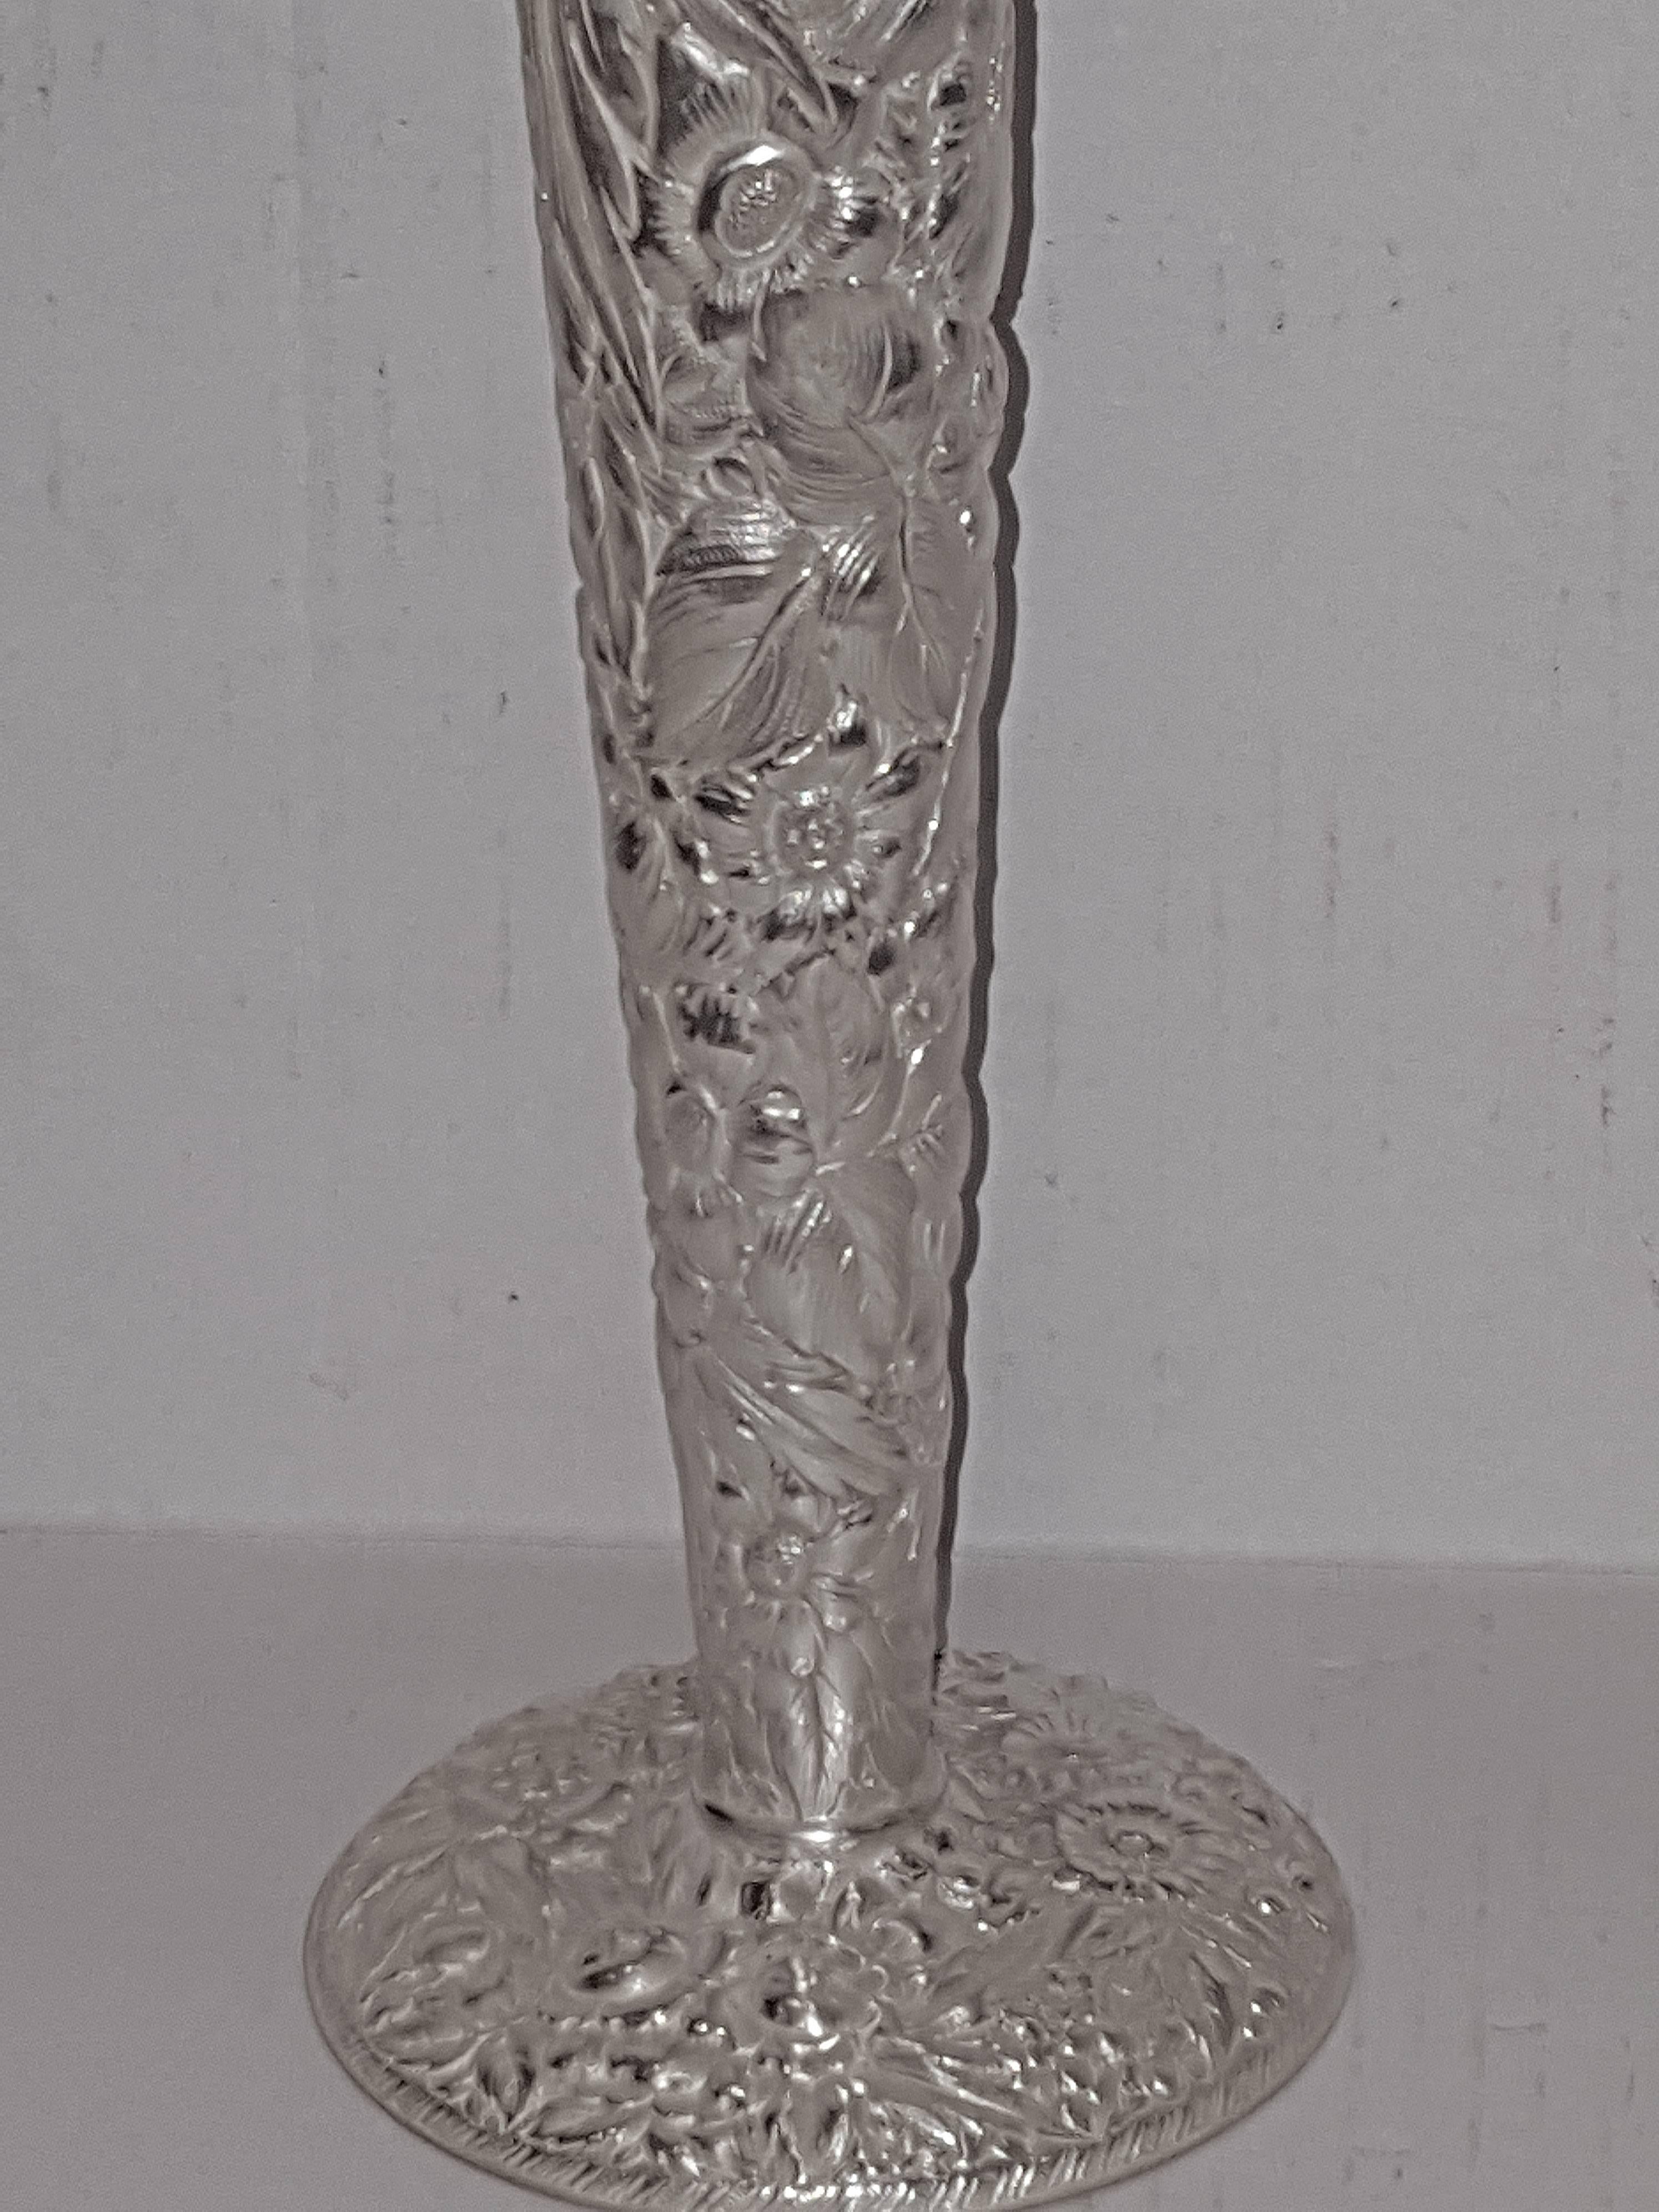 Paire de vases en métal argenté des années 1900 avec une décoration florale très détaillée.

Mesures :
hauteur de 18